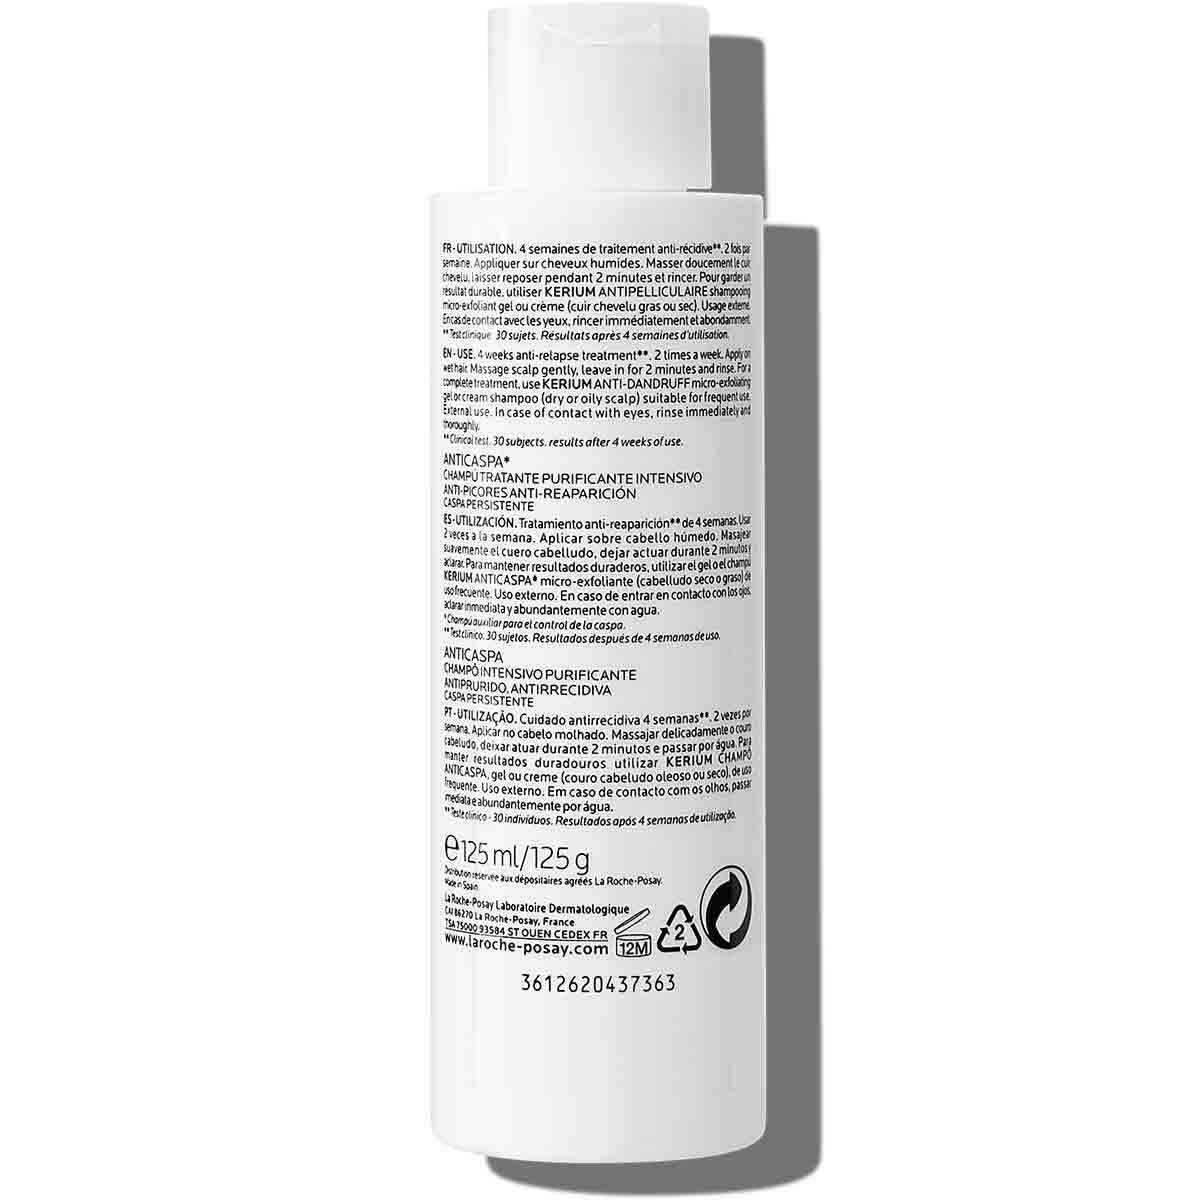 La Roche Posay ProductPage Kerium Anti Dandruff Cream Shampoo 200ml 34